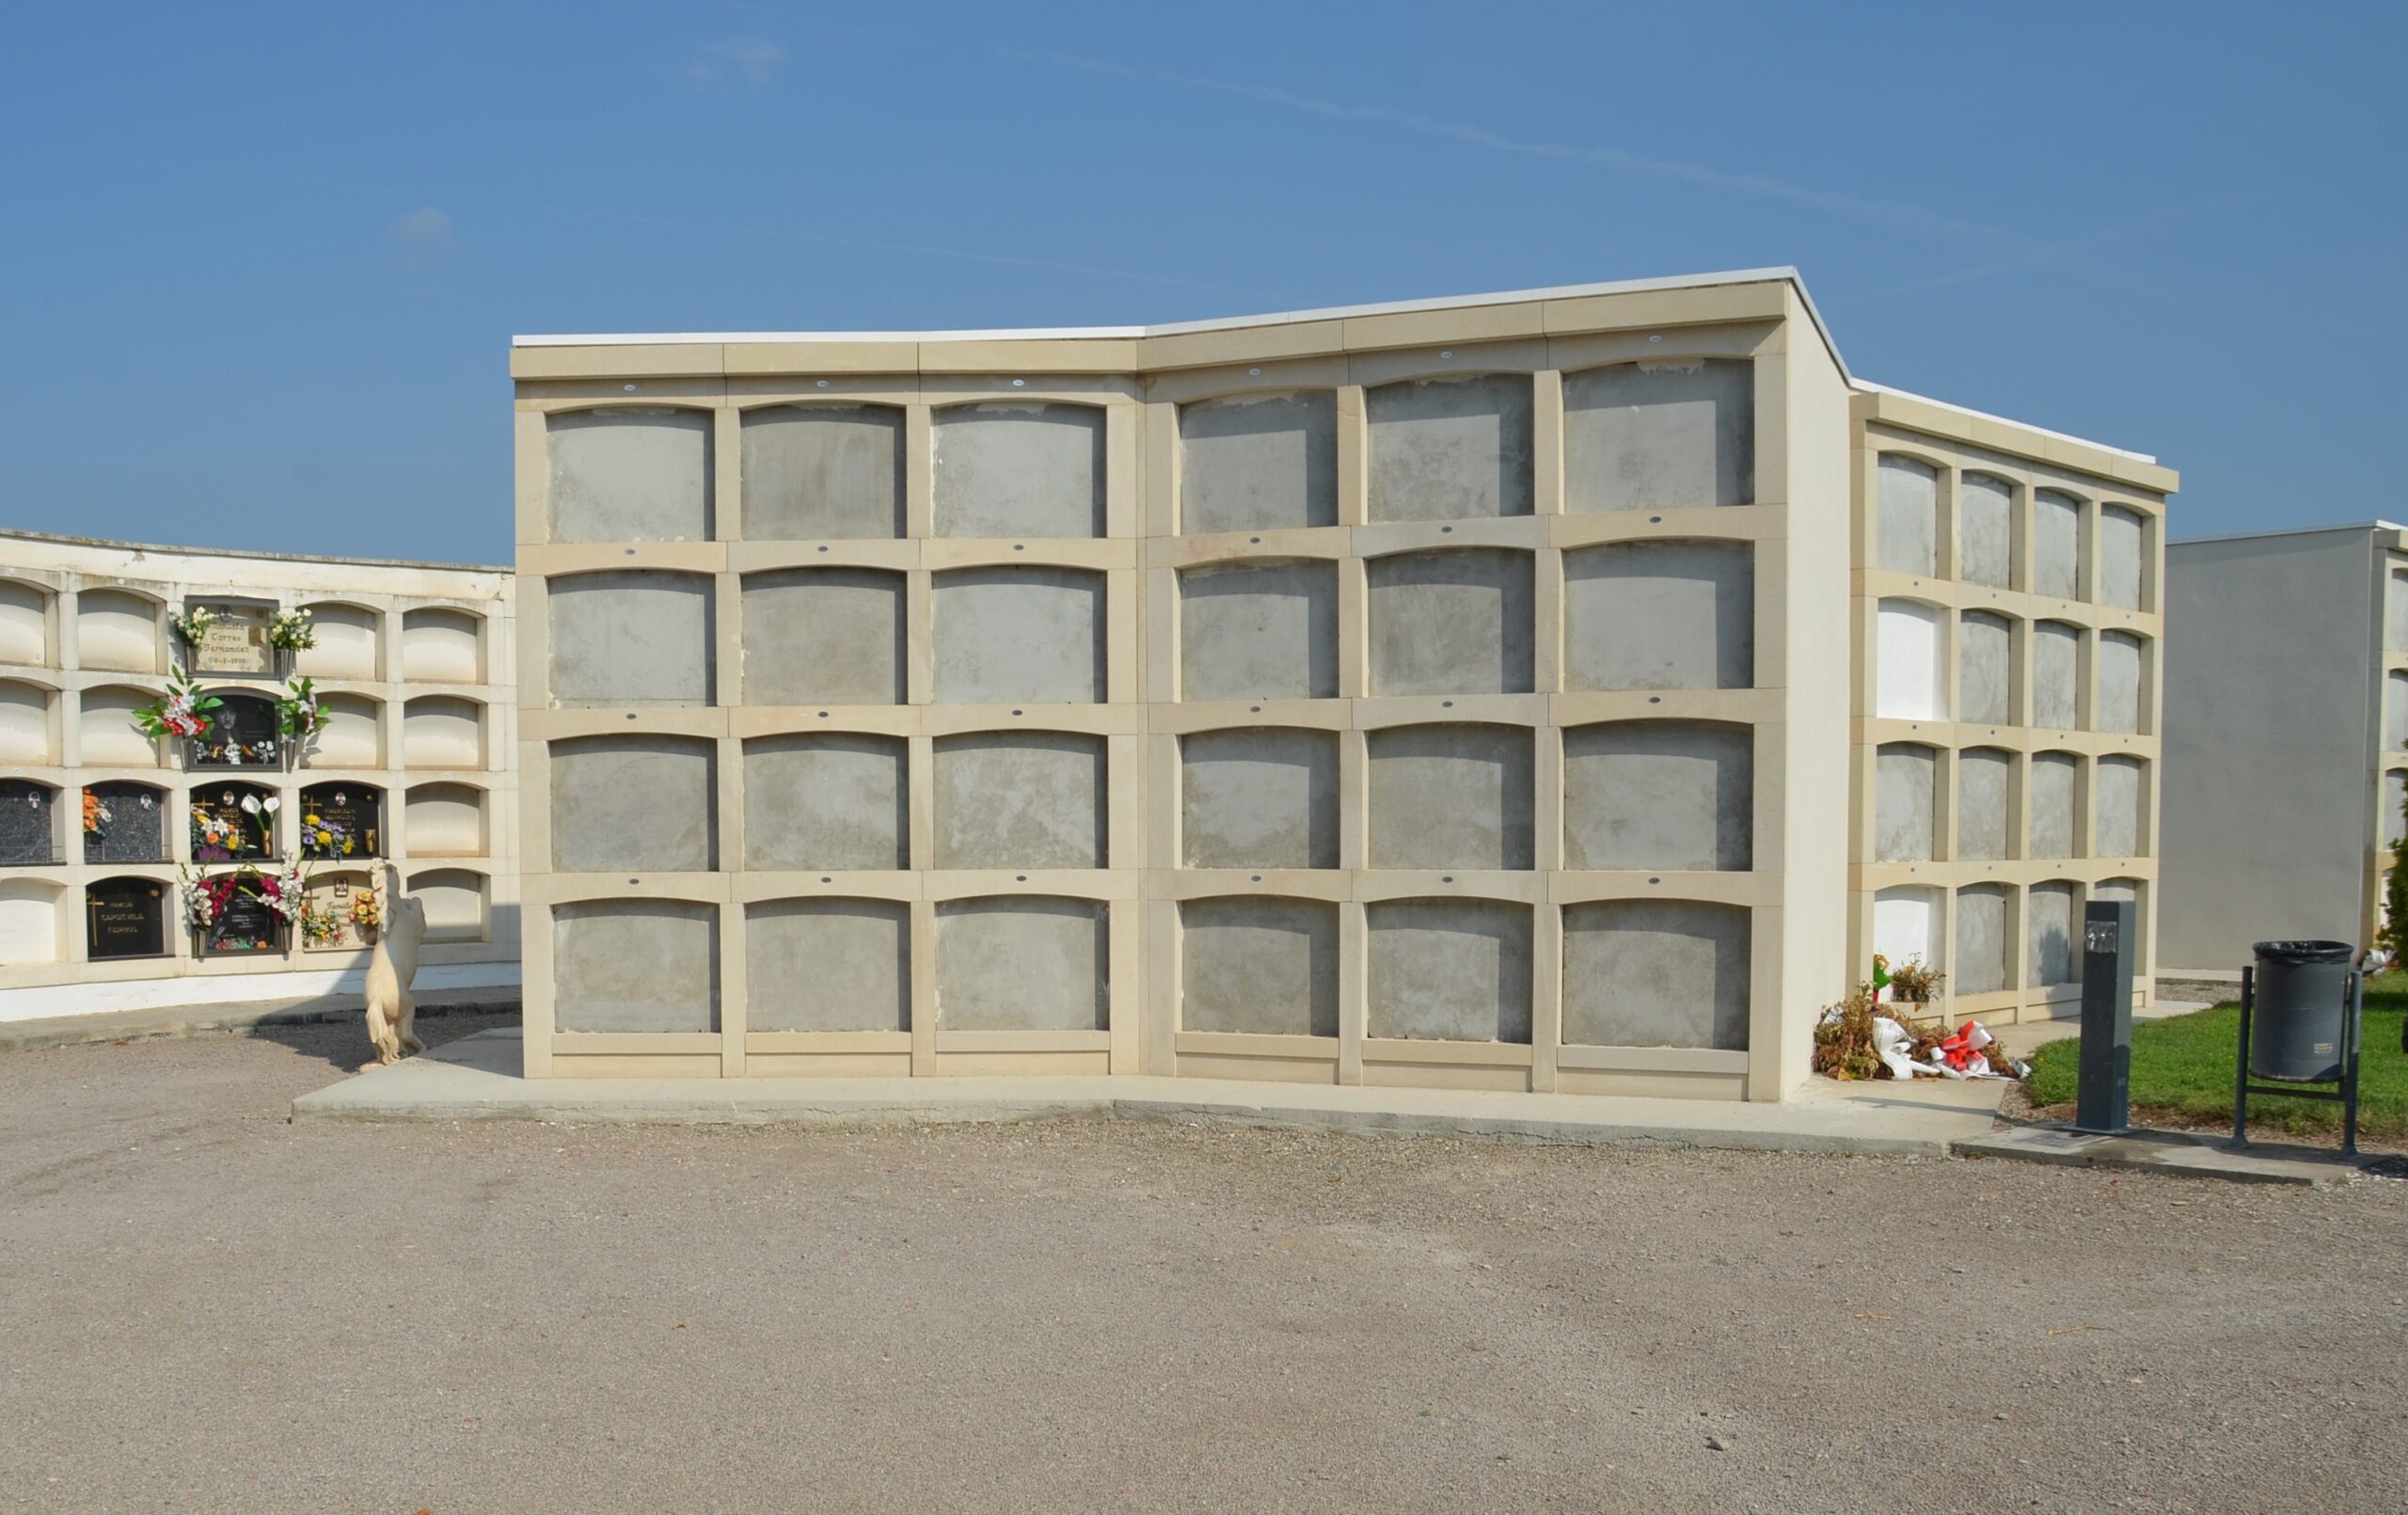 L’Ajuntament de Mollerussa fa un oferiment públic de concessions de drets funeraris per a construir 88 nous nínxols